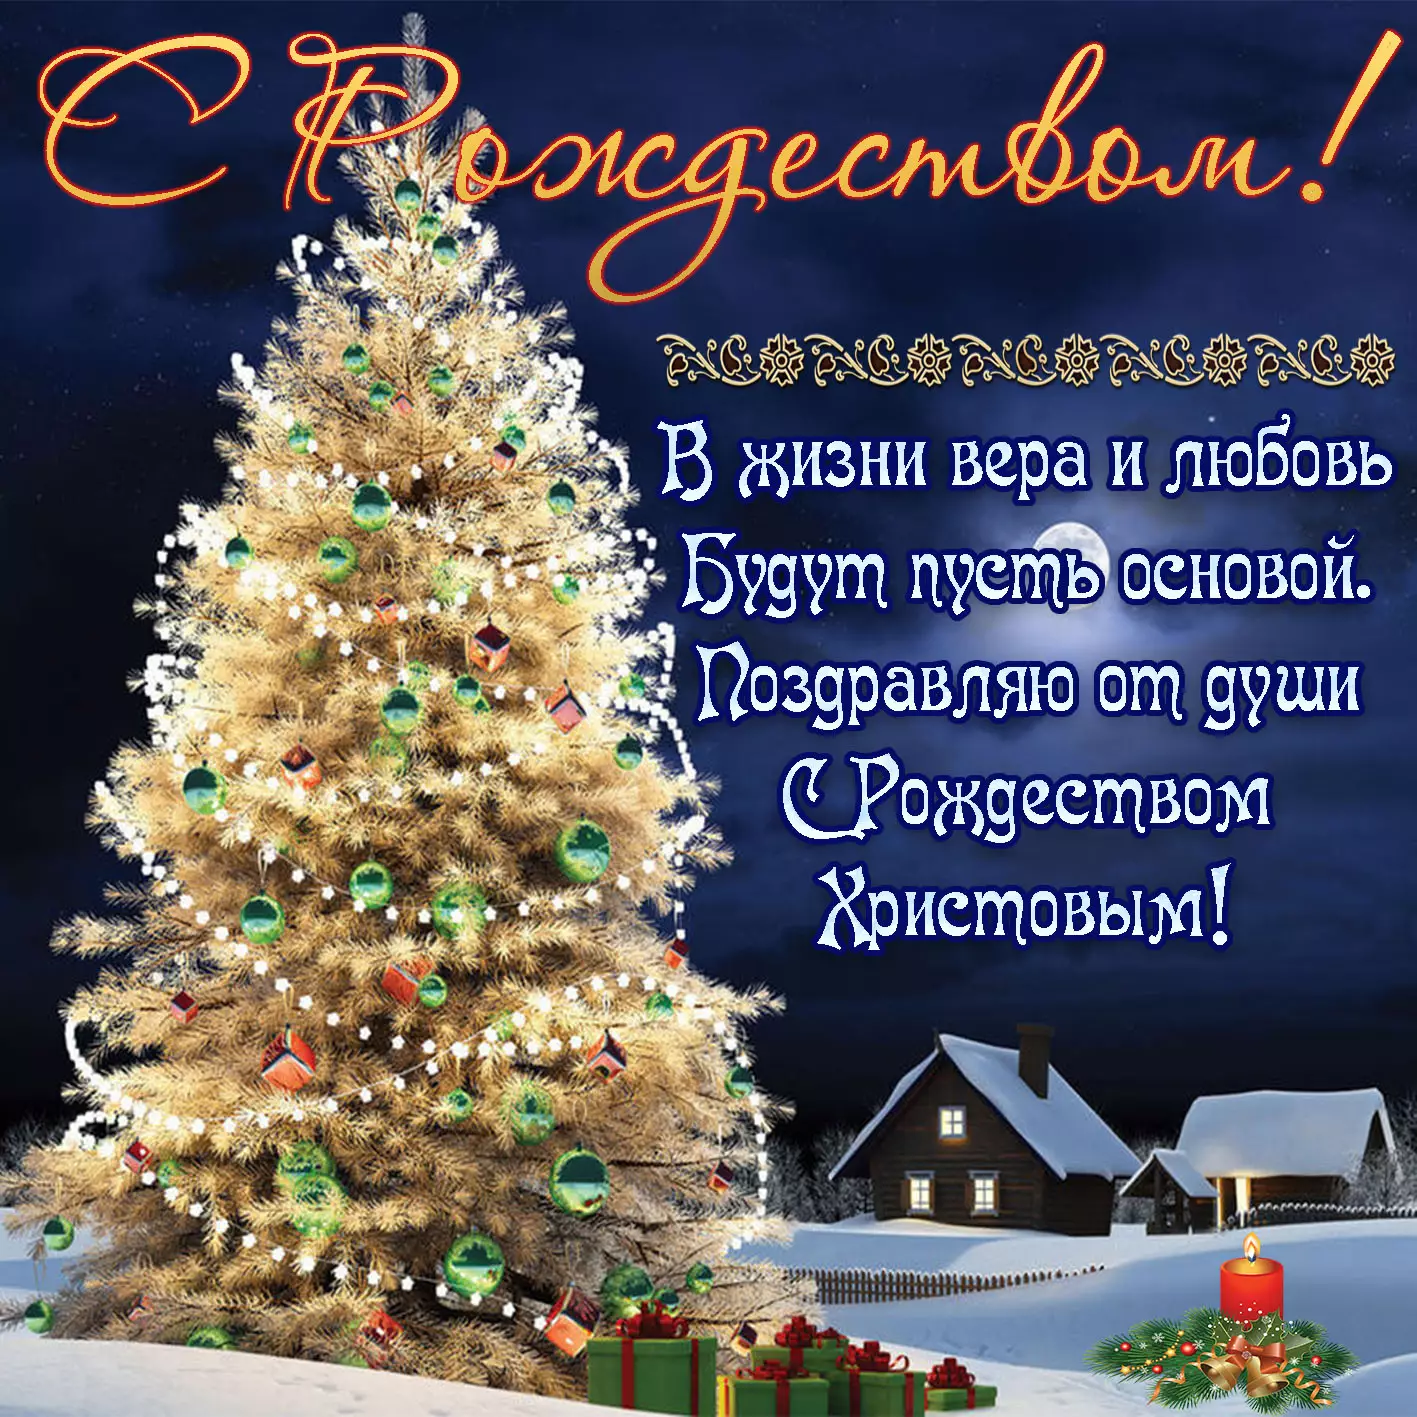 Гайтана, Винник, Мейхер: звезды трогательно поздравили украинцев с Рождеством